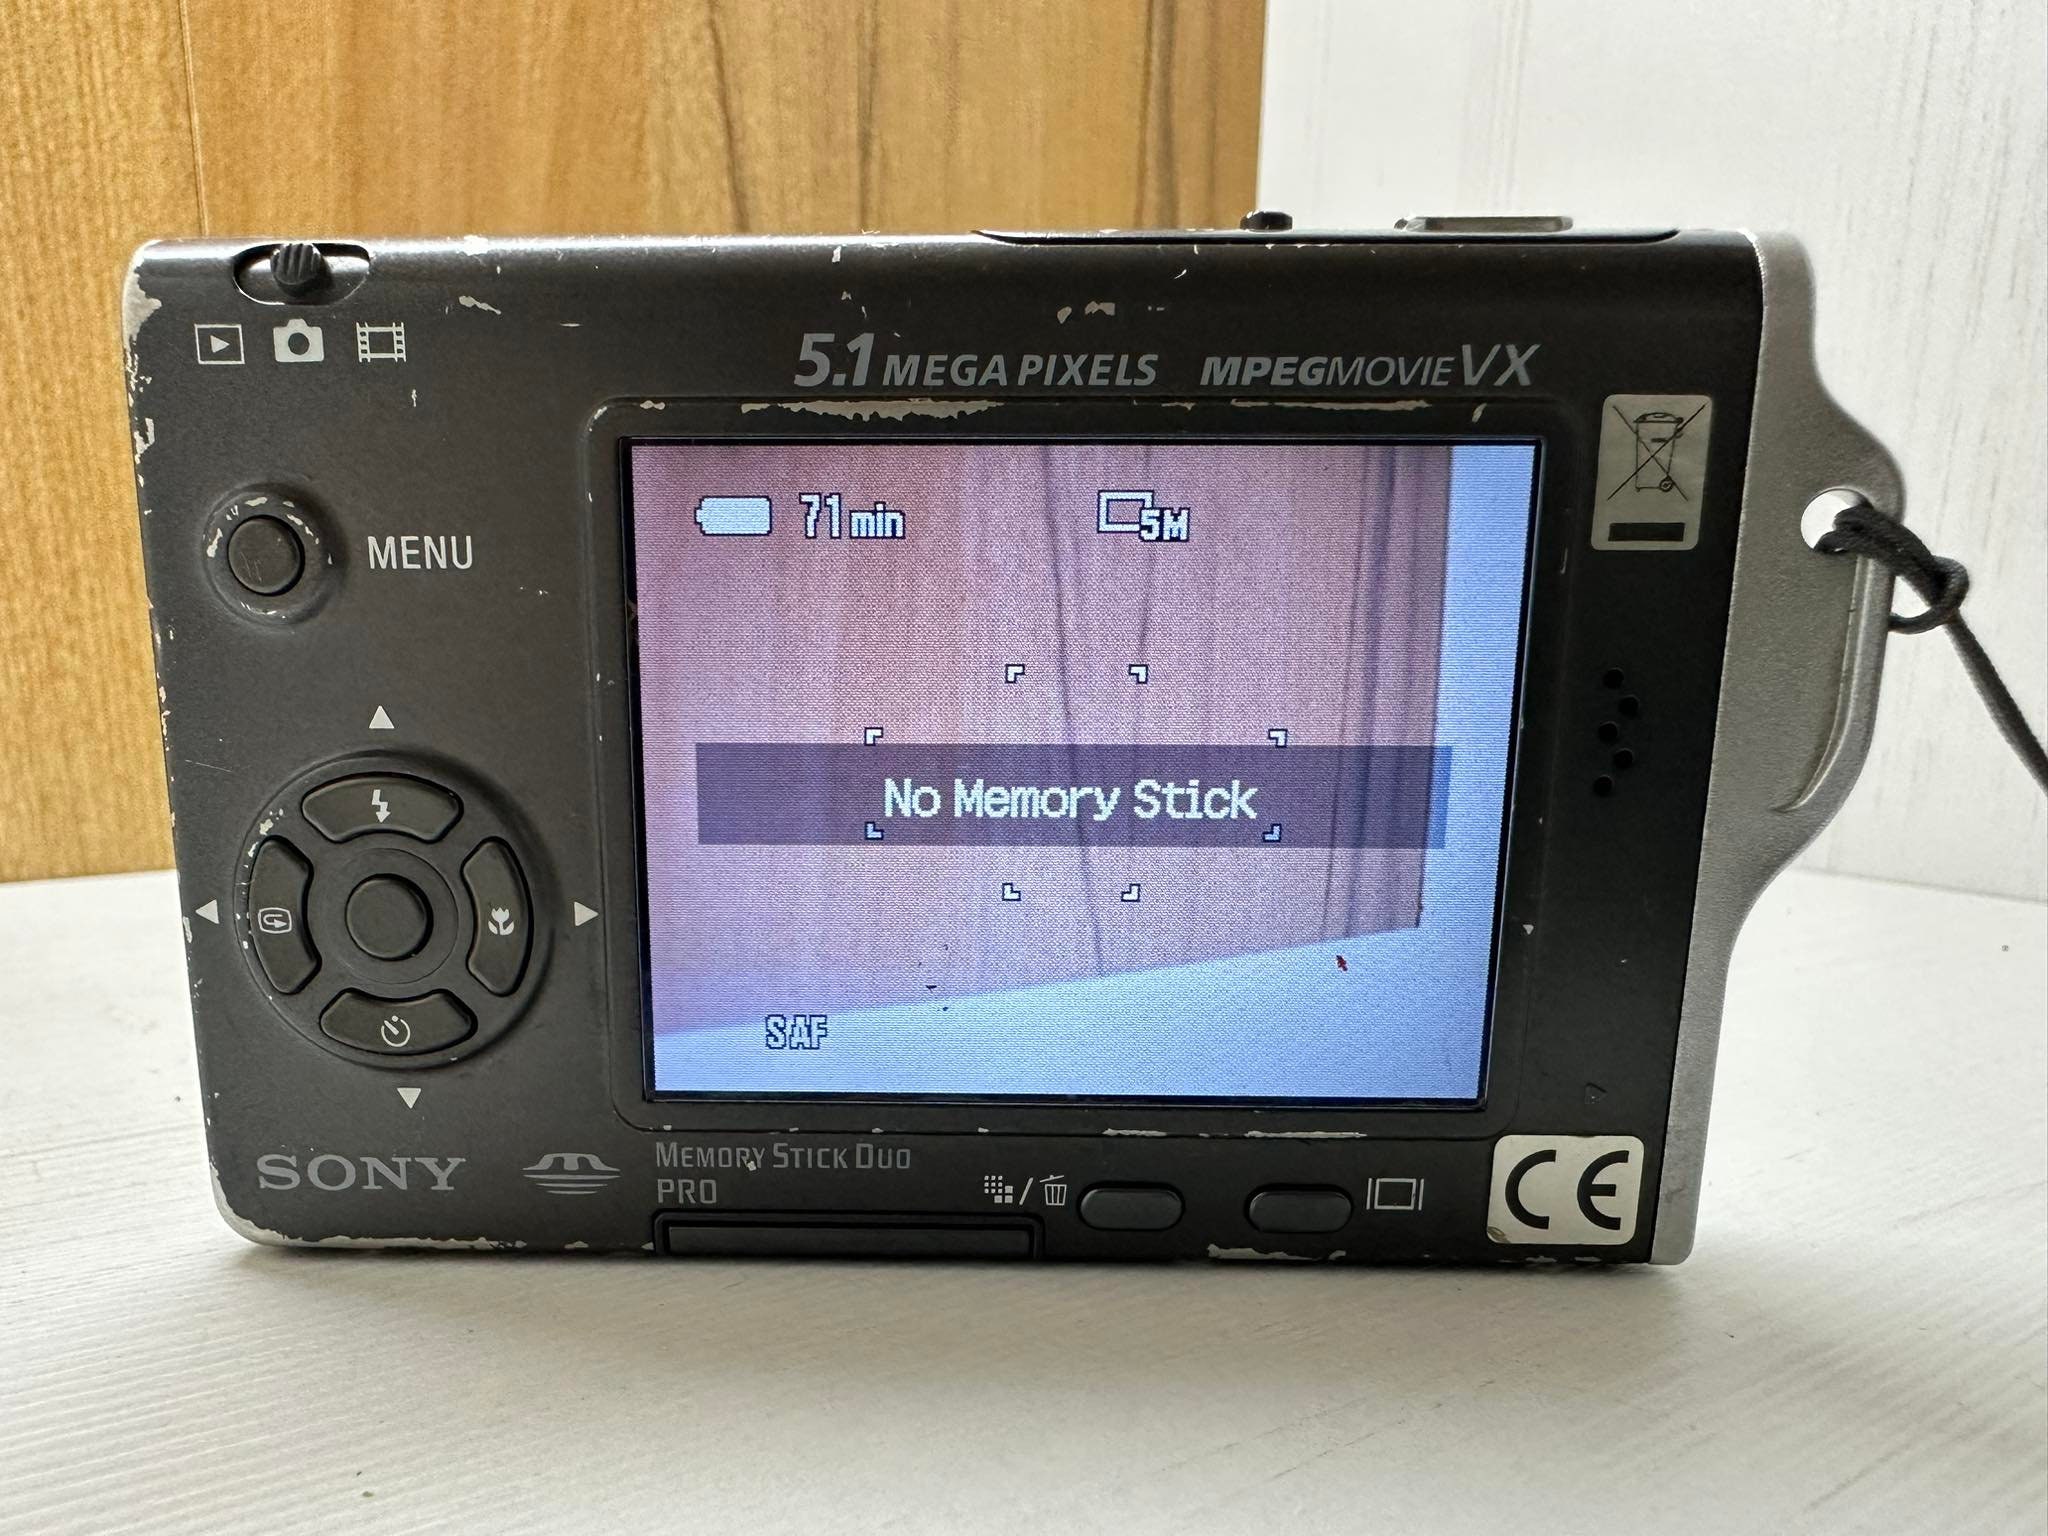 Sony Cybershot Dsc-t7 Ultrathin Digital Still Camera 5.1 MP 3X 